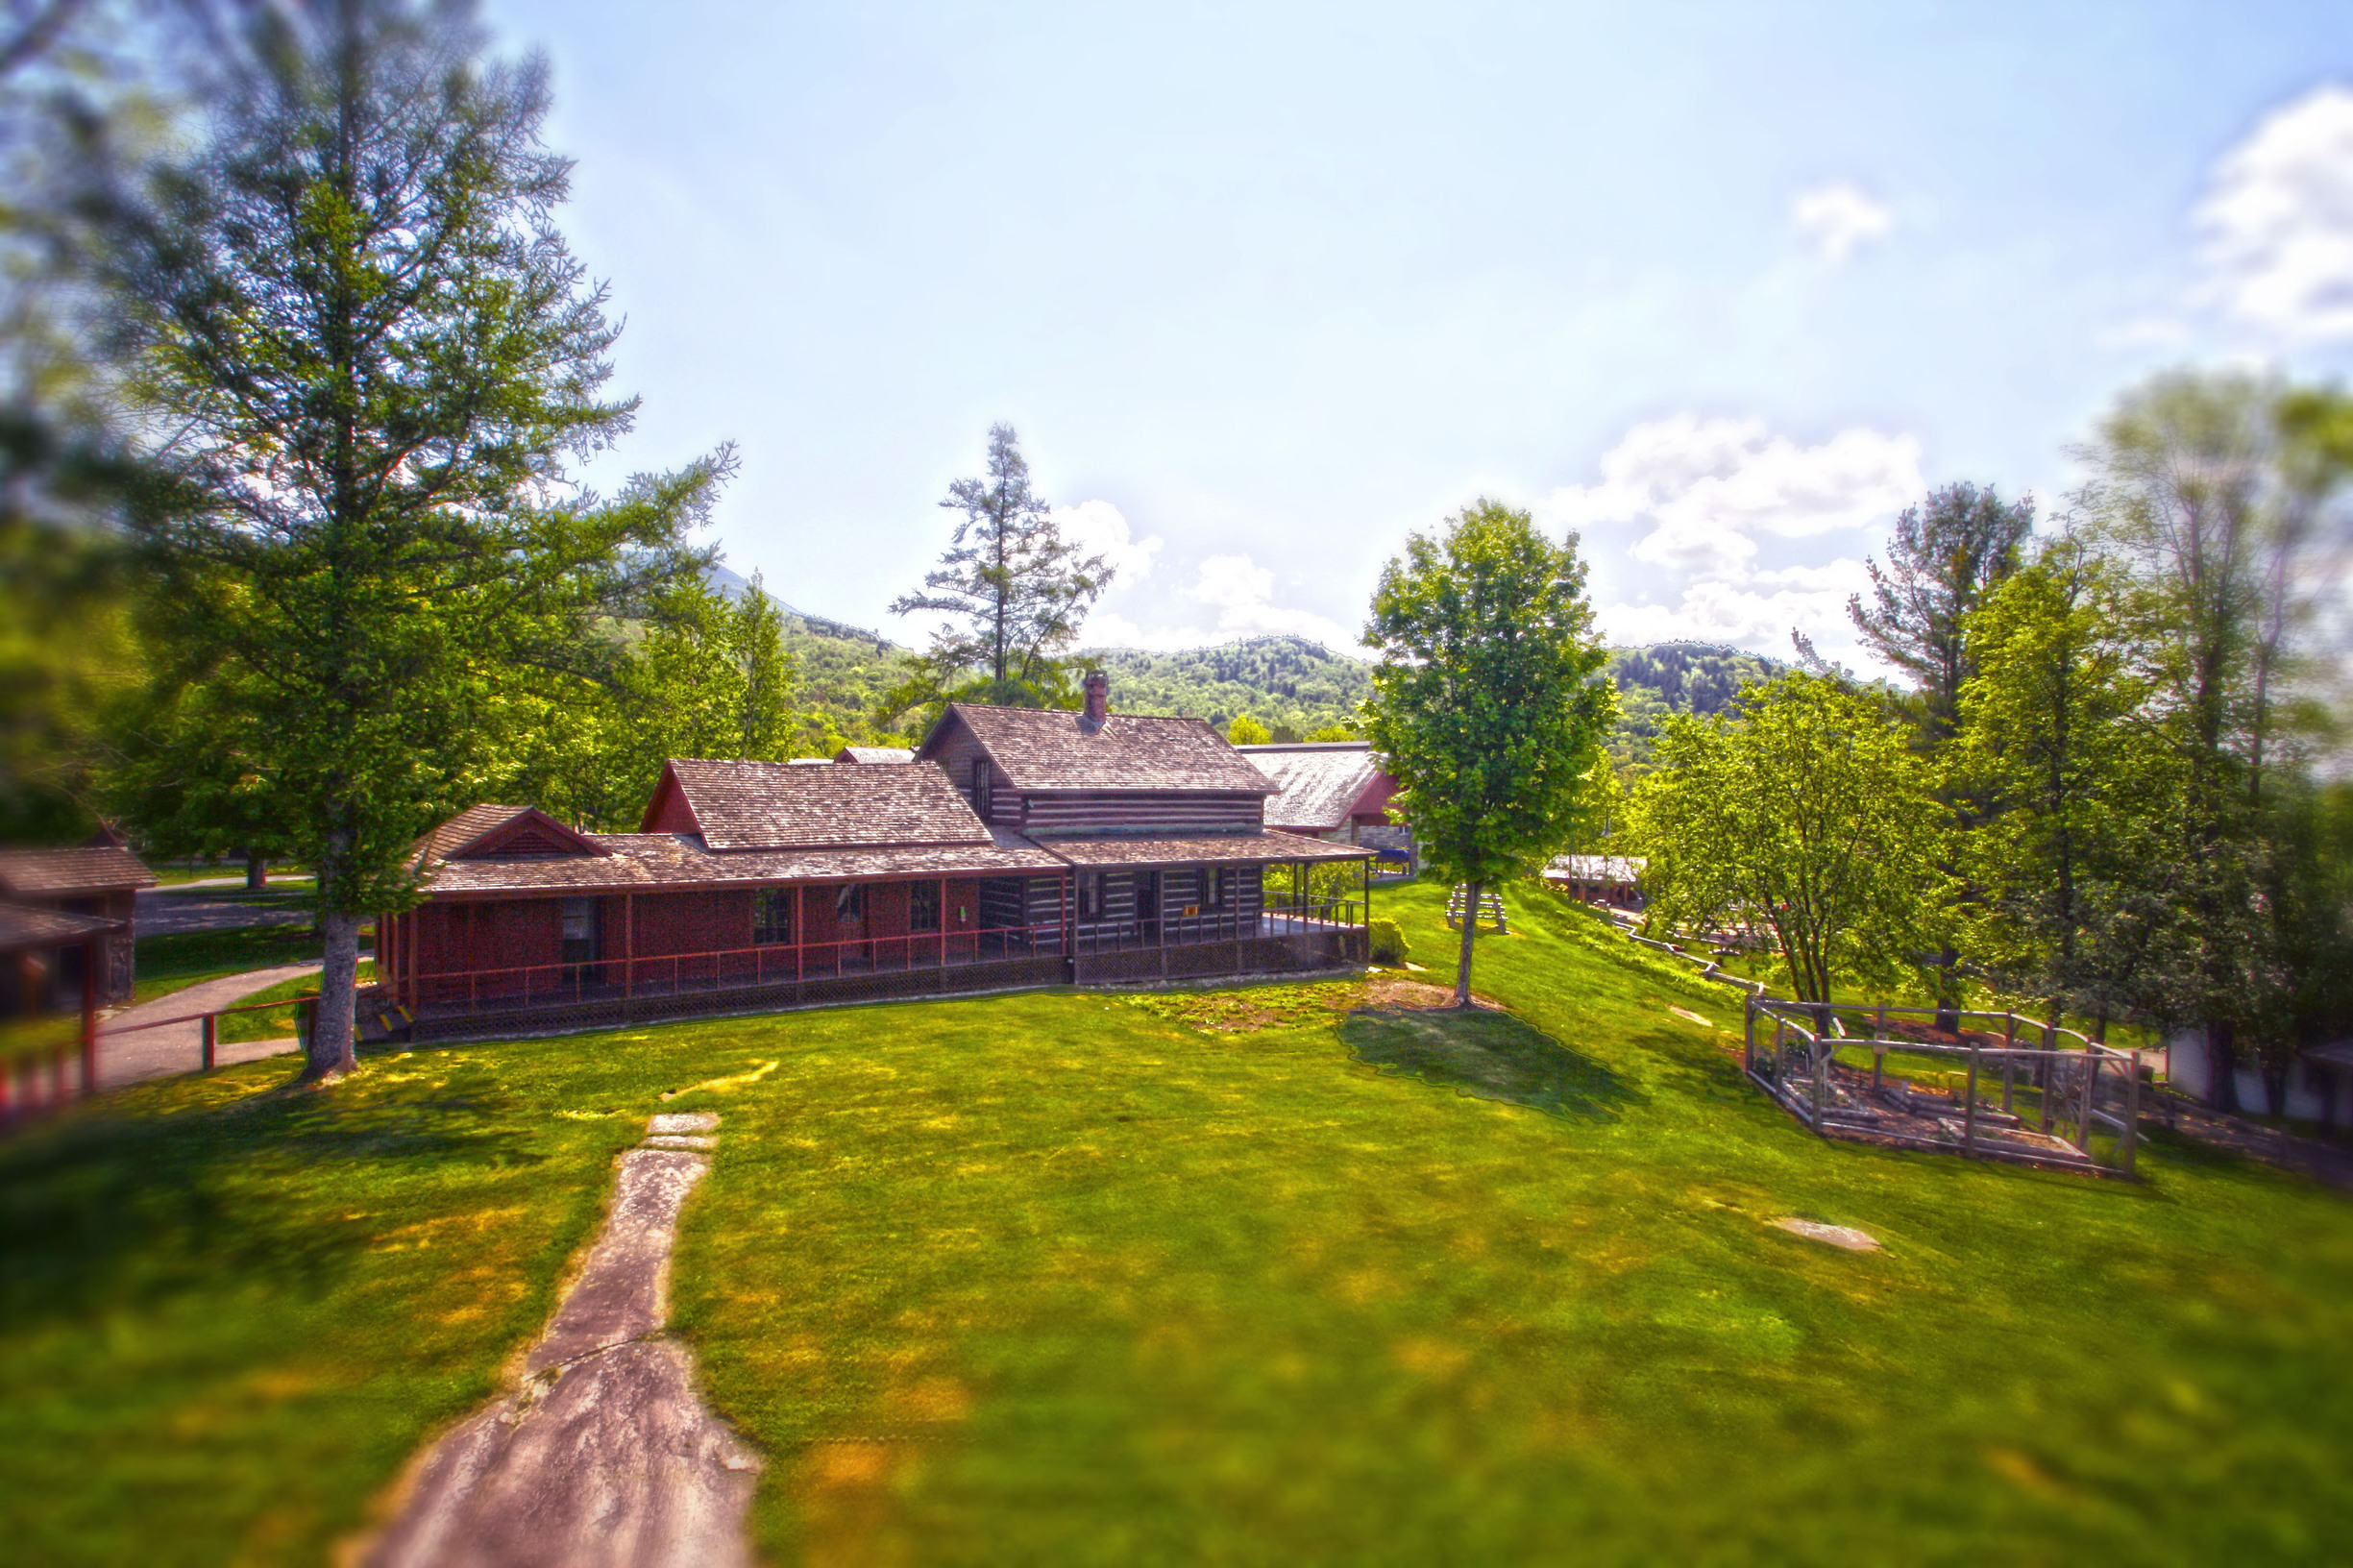 Adirondack Historical Association/Adirondack Museum, Blue Mountain Lake, Log Hotel and Cottages